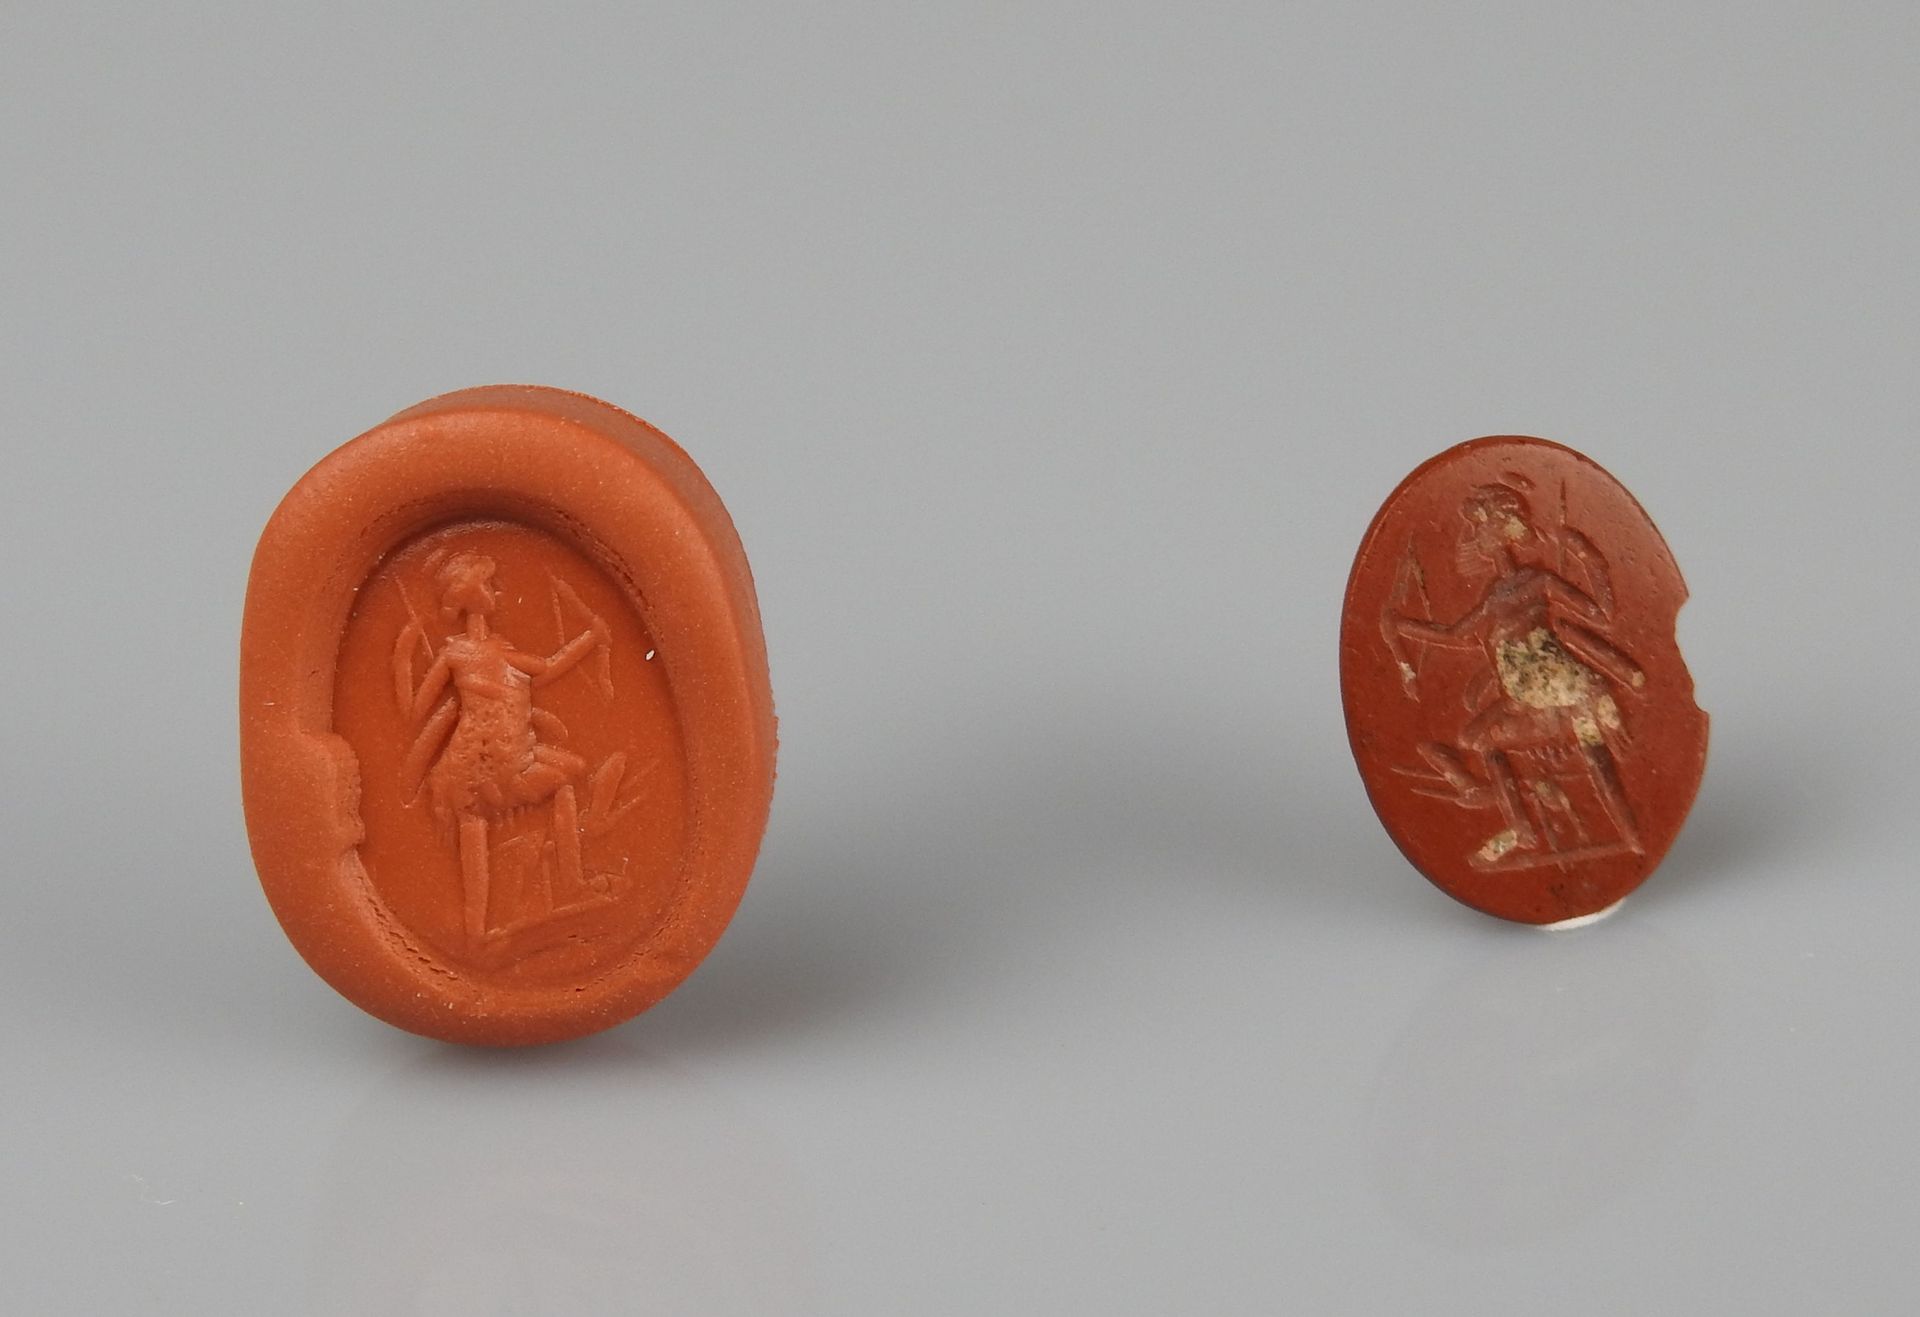 Null 凹版画，表现拿着弓的猎人戴安娜。

红色碧玉1.2厘米碎片

罗马时期